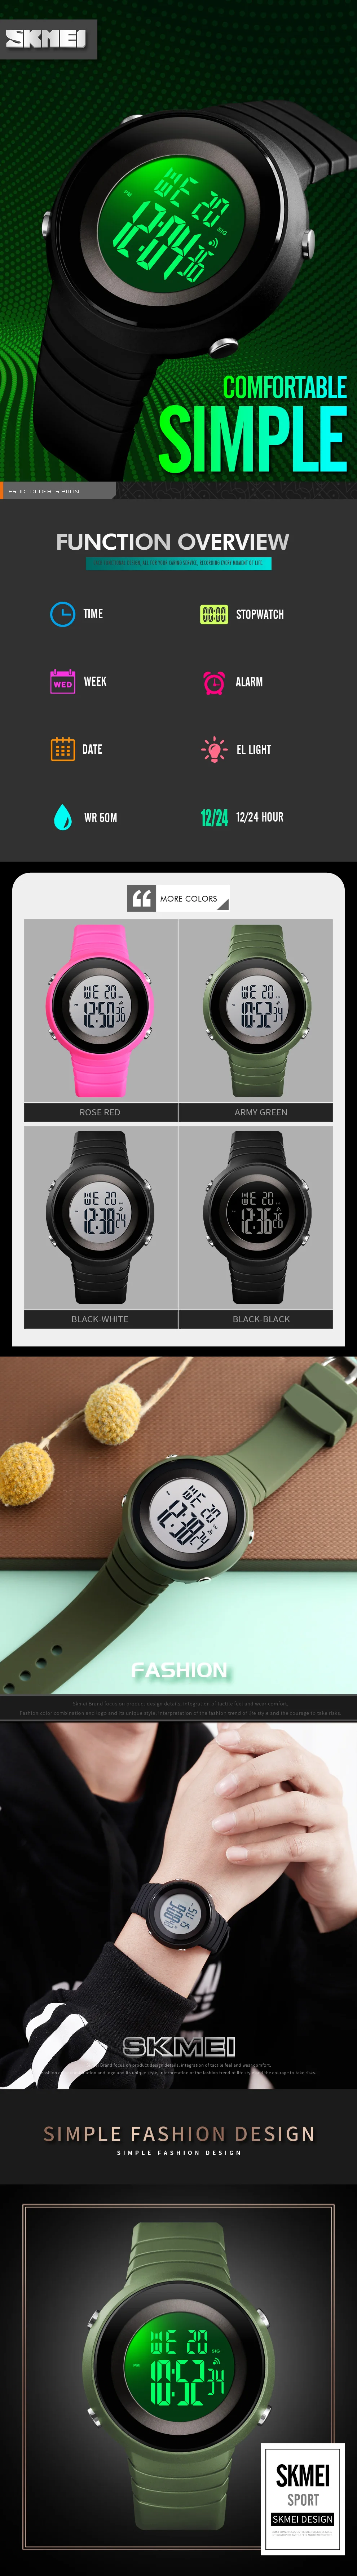 Best Selling Wrist Watch Supplier SKMEI 1507 Silicone Band Waterproof Sports Digital Wristwatch